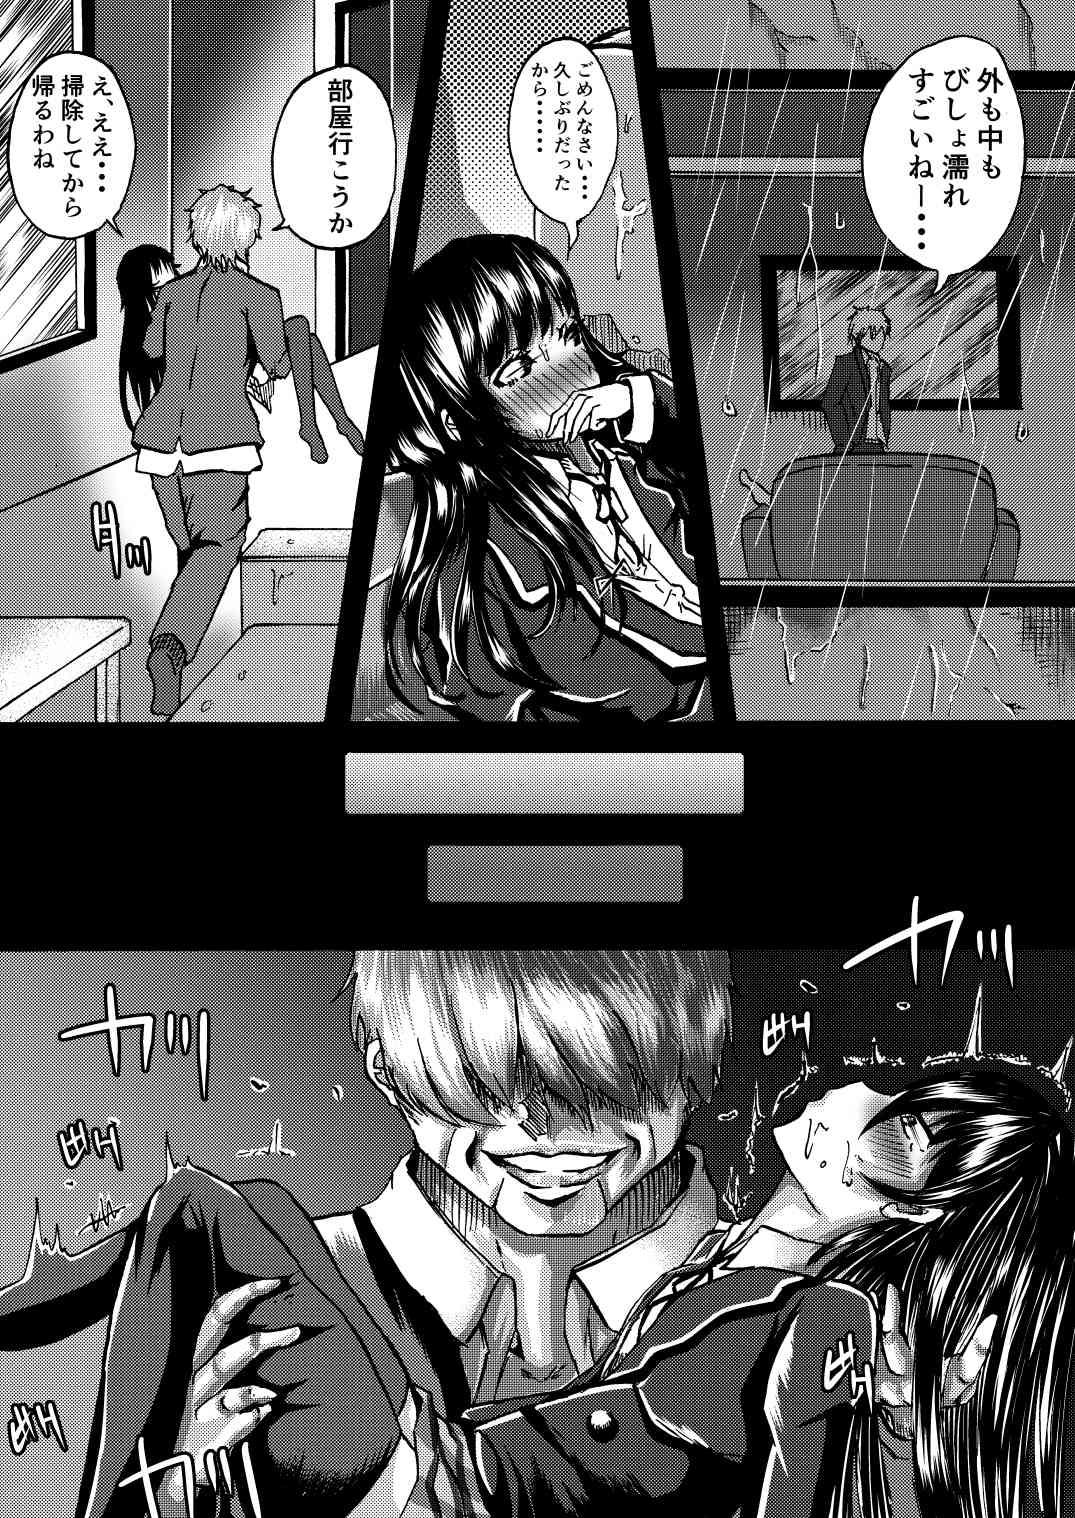 Stepsiblings Yukinon to SEX Shitain daro!? - Yahari ore no seishun love come wa machigatteiru Lez Fuck - Page 11